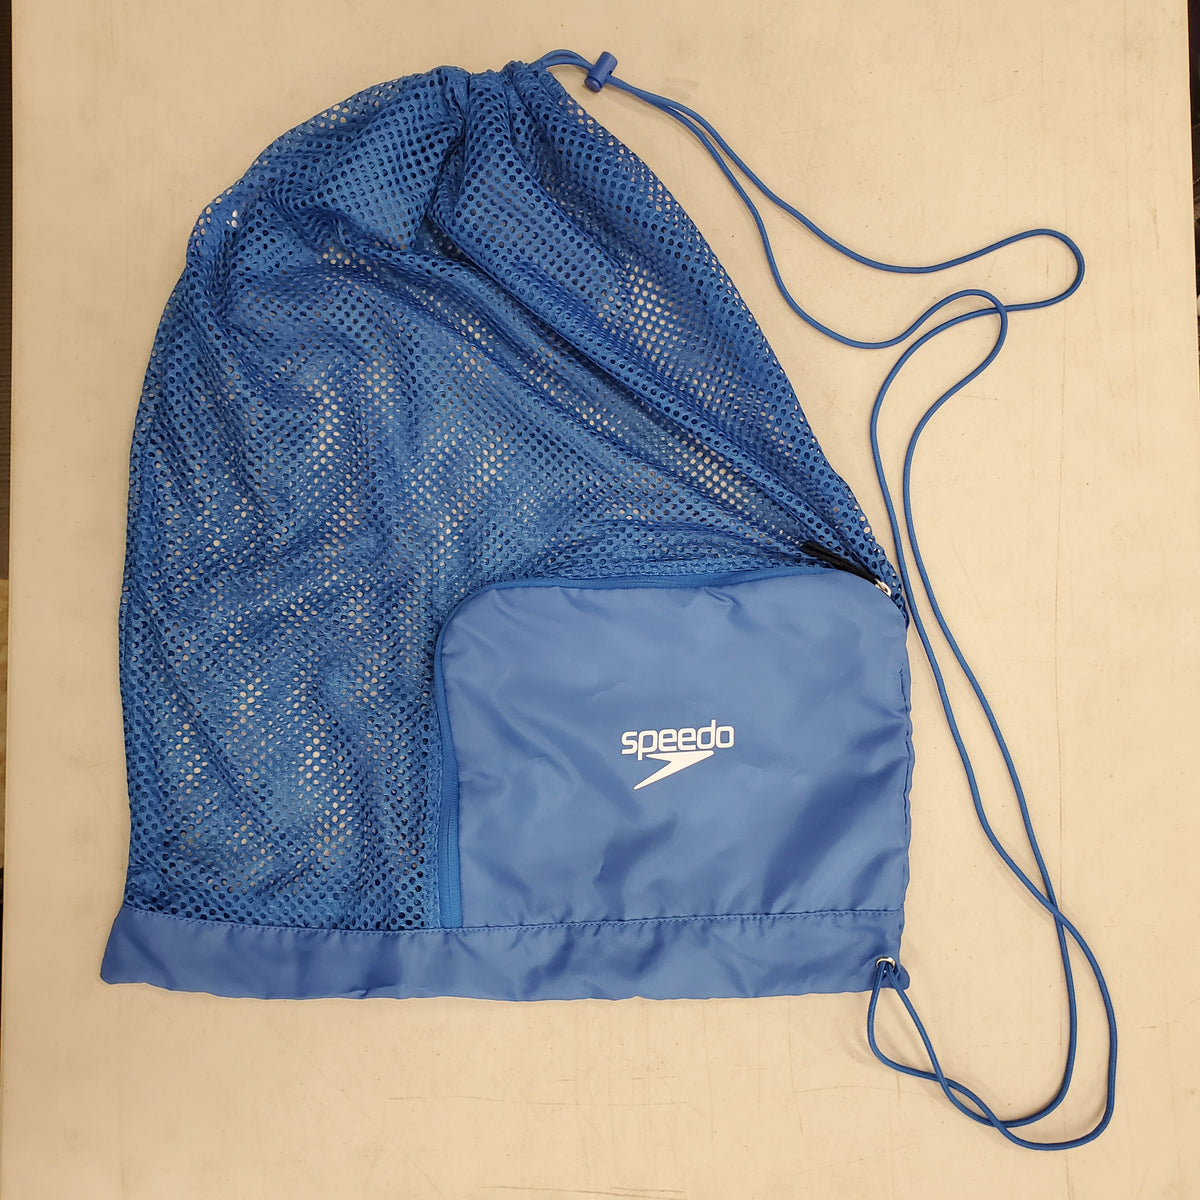 Speedo Ventilator Mesh Equipment Bag - Imperial Blue - Used - Good